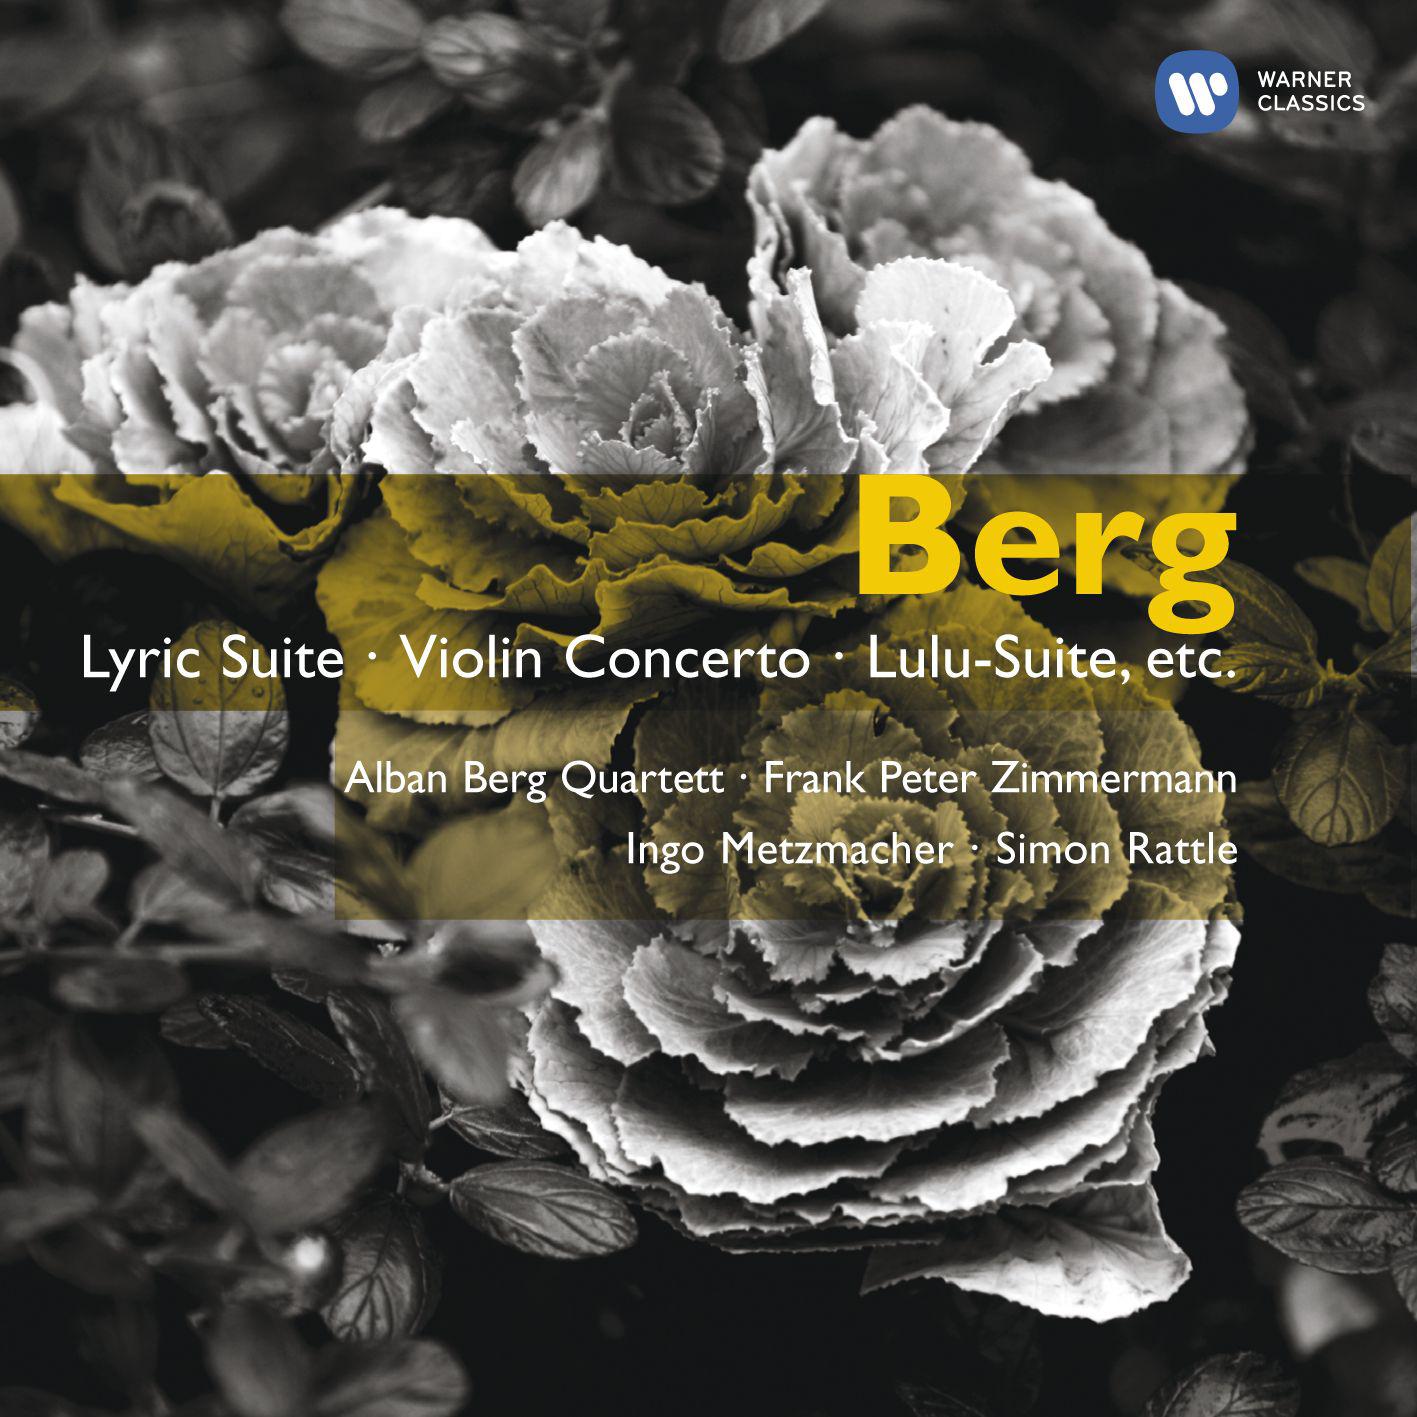 Lyric Suite for String Quartet:III. Allegro misterioso - Trio estatico